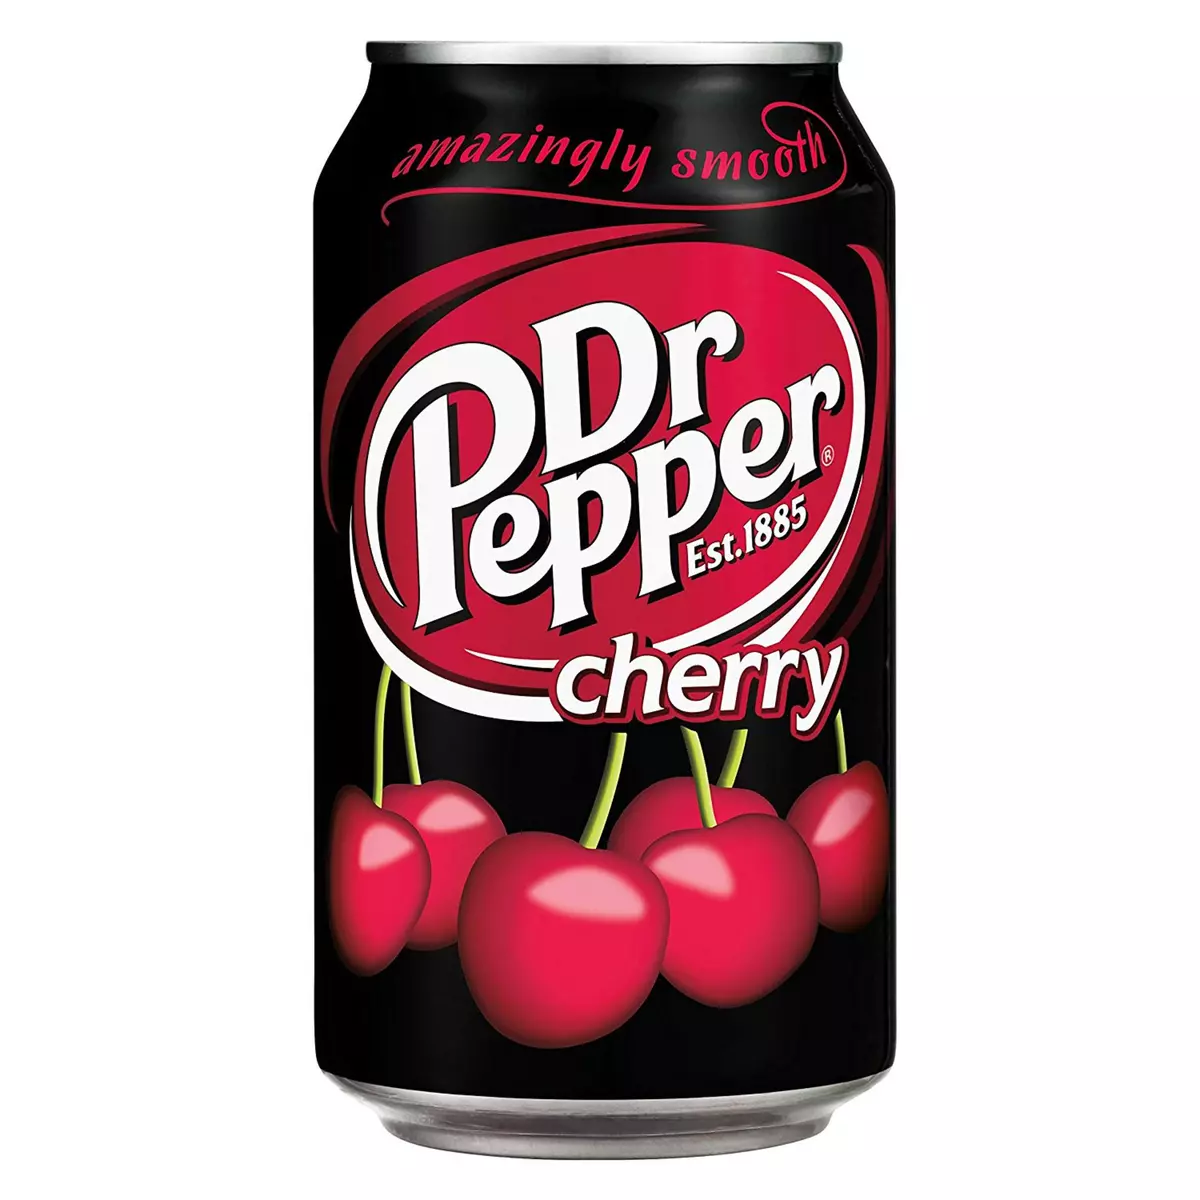 DR PEPPER Cherry boisson gazeuse au cola aromatisée cerise boîte 33cl